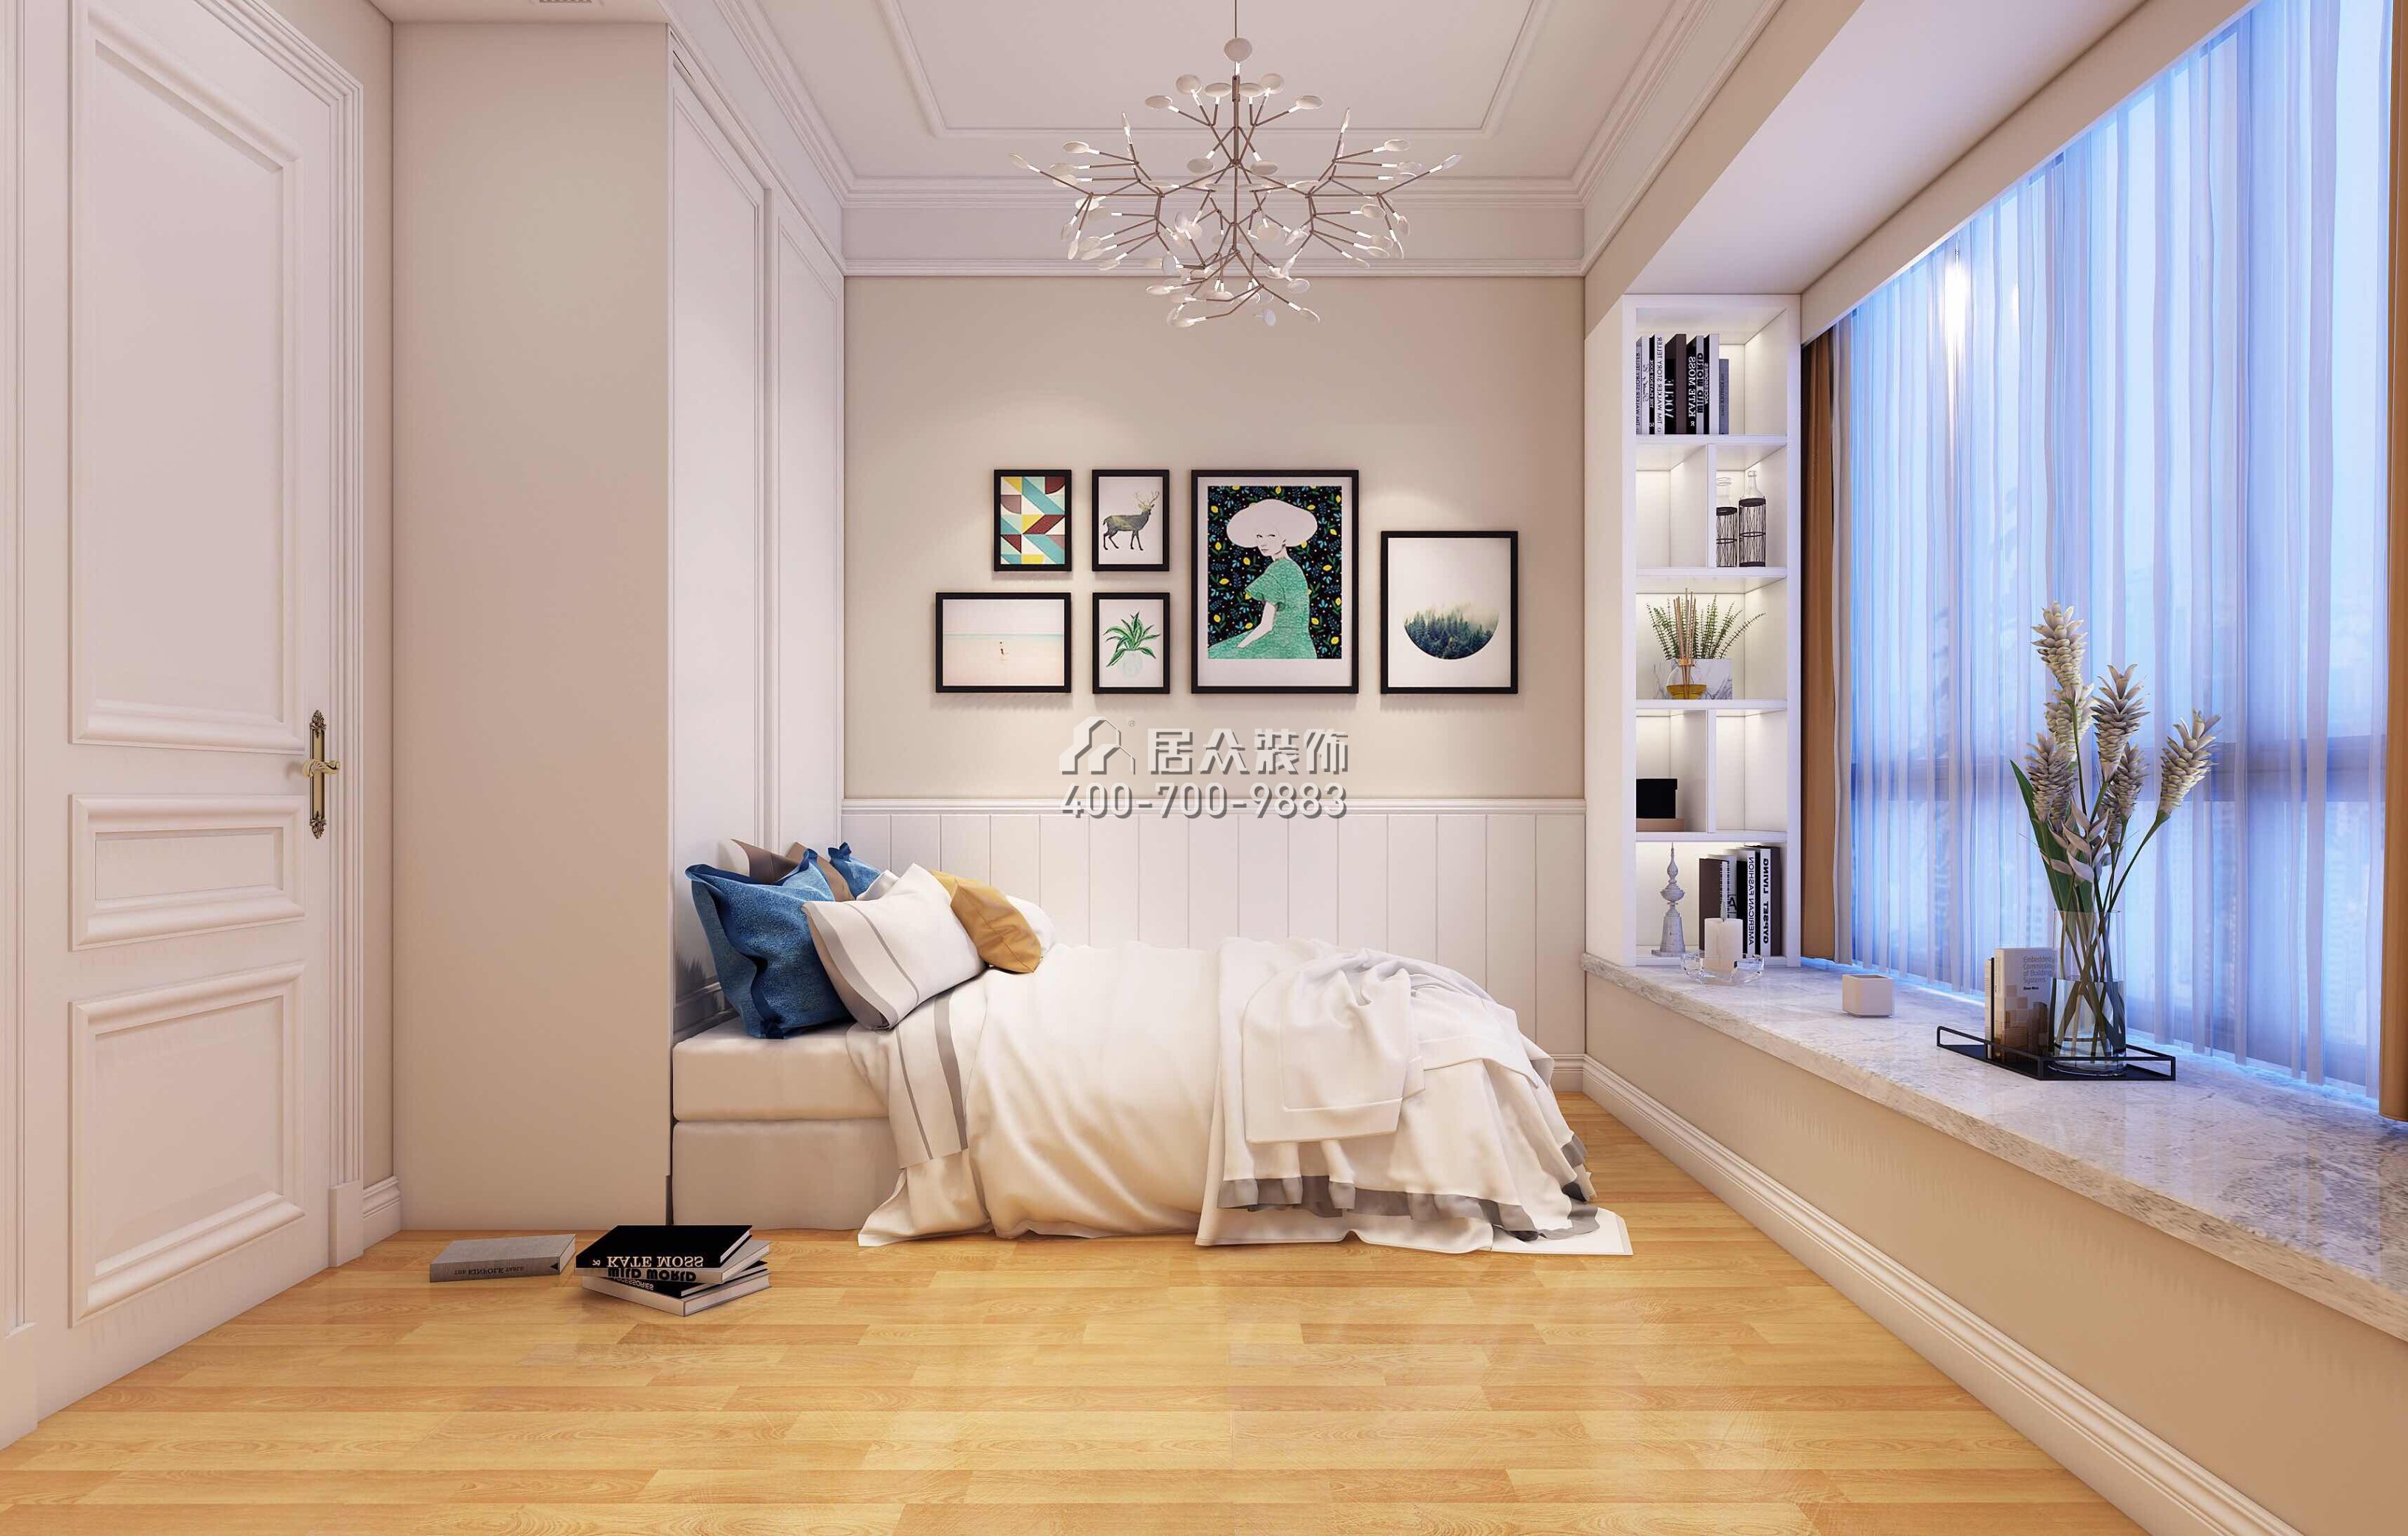 信义荔山御园197平方米欧式风格平层户型卧室装修效果图